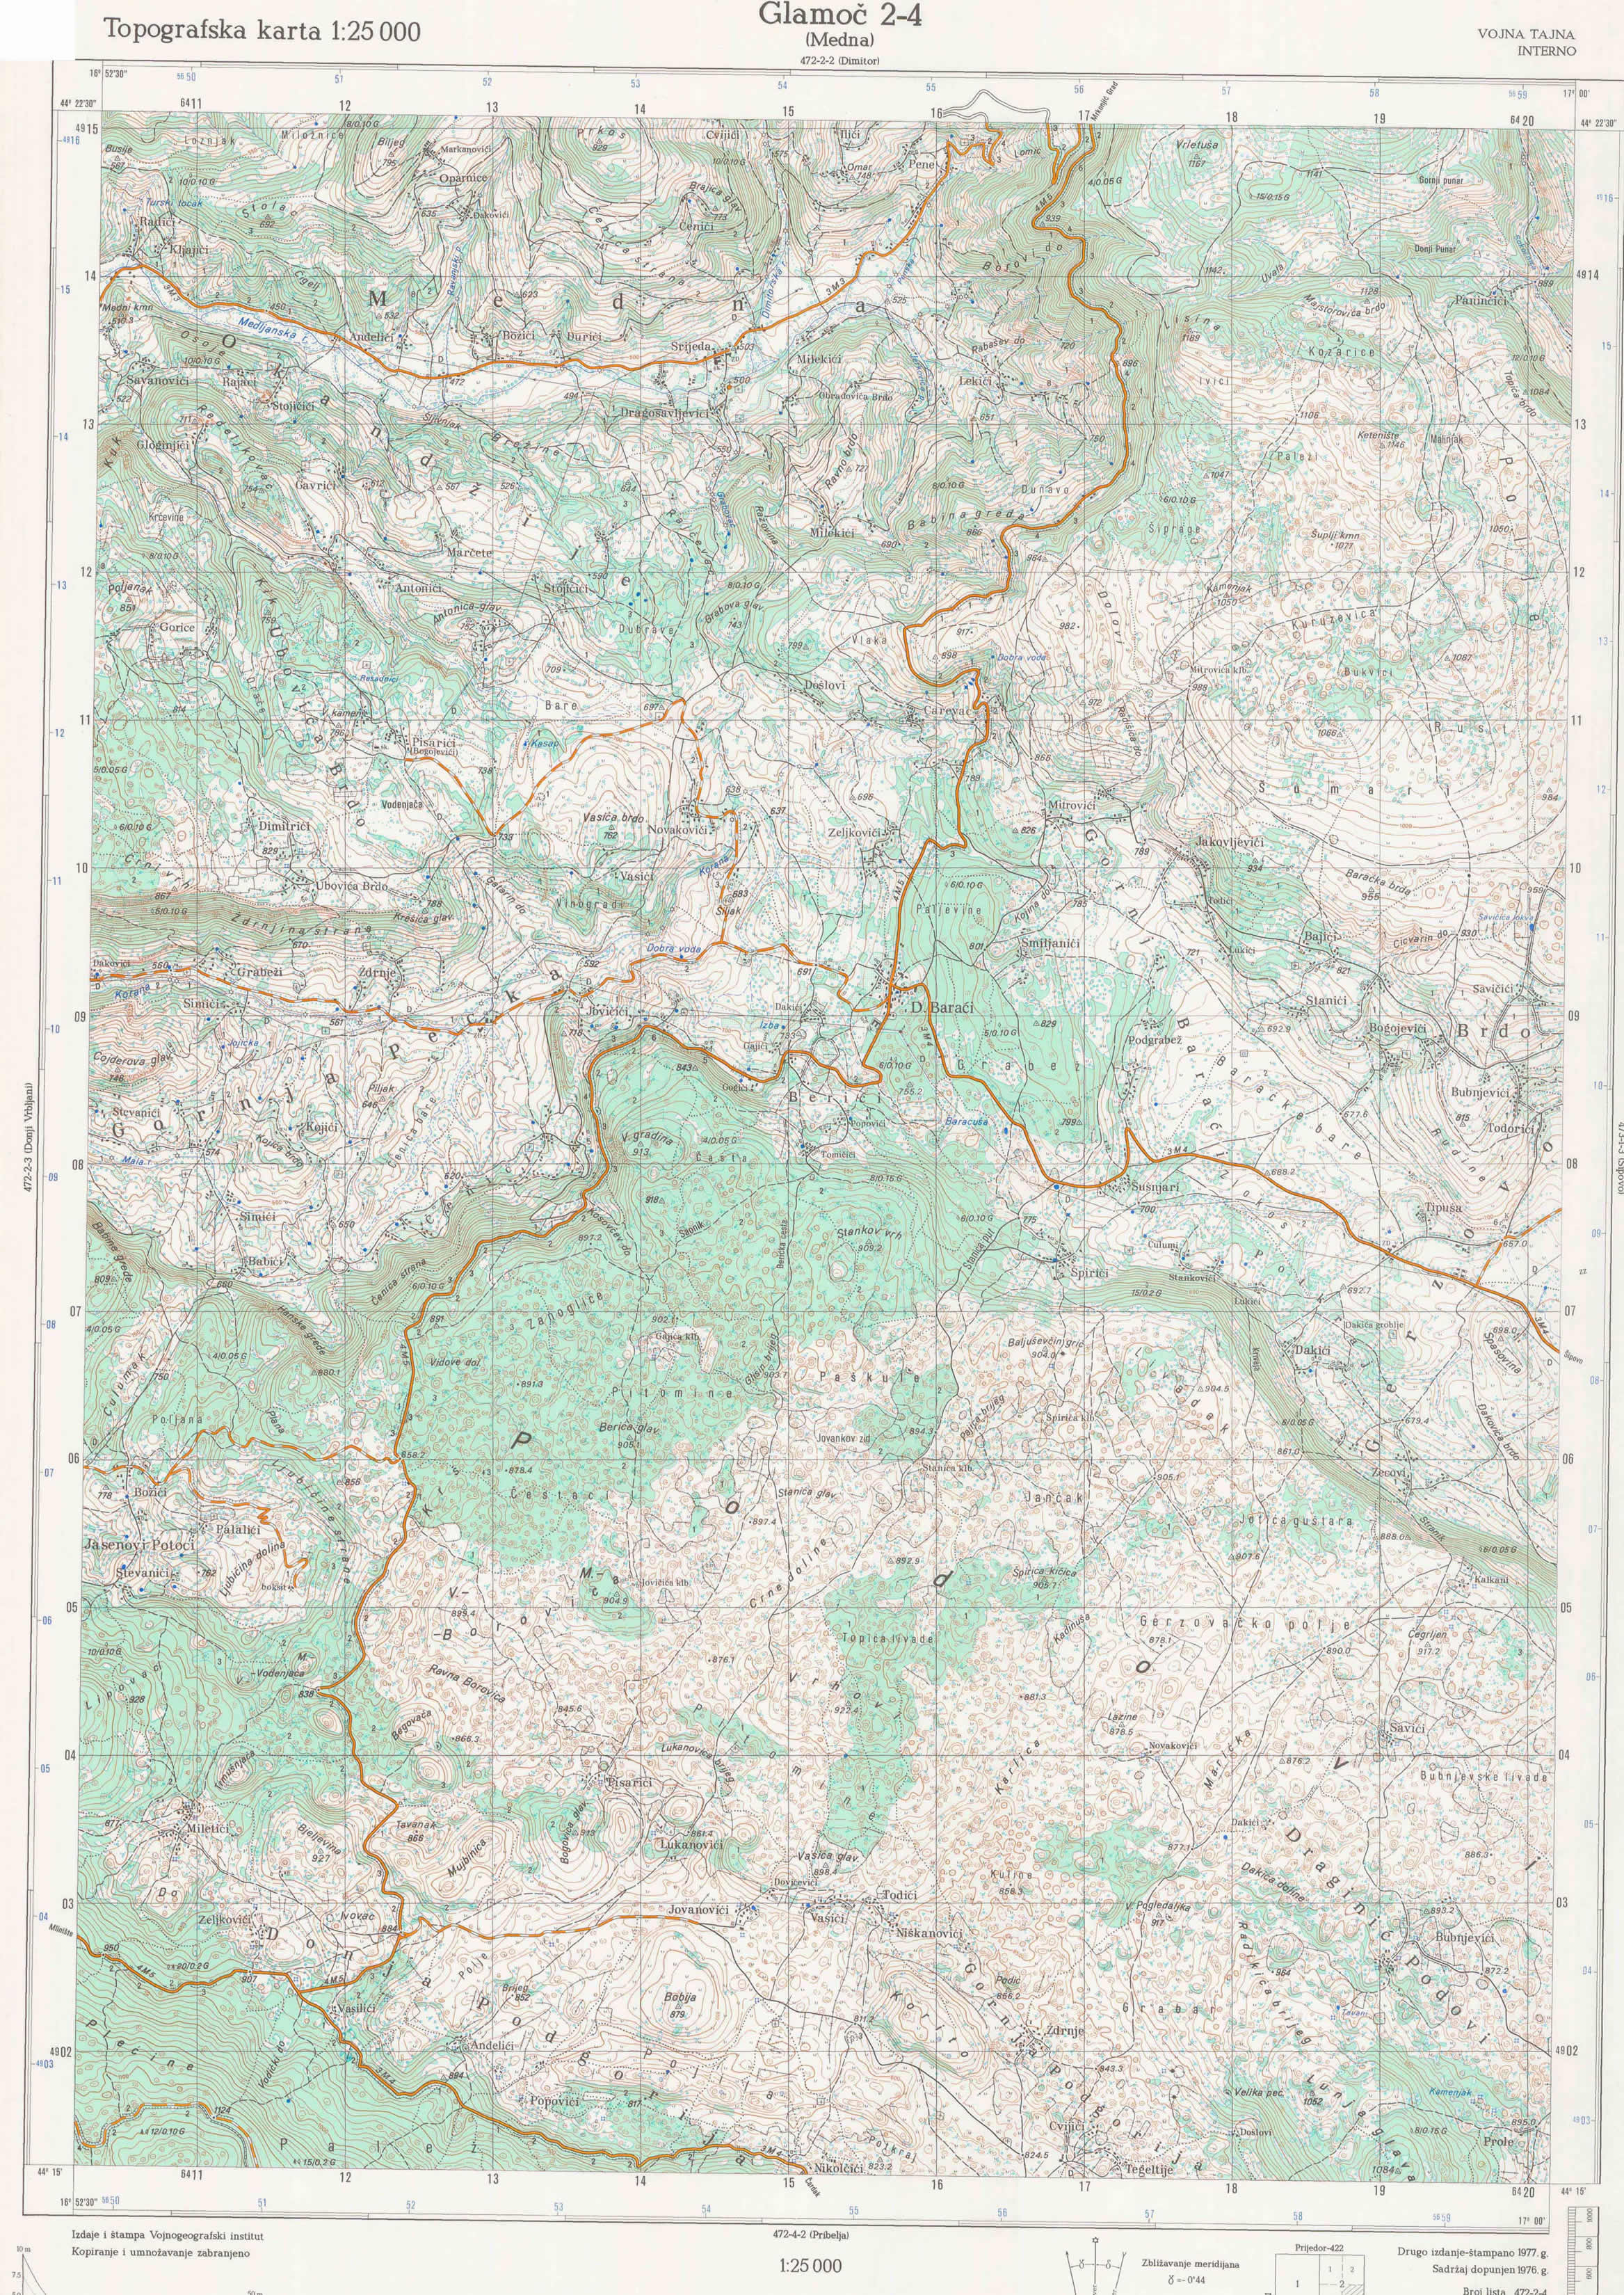  topografska karta BiH 25000 JNA  medna